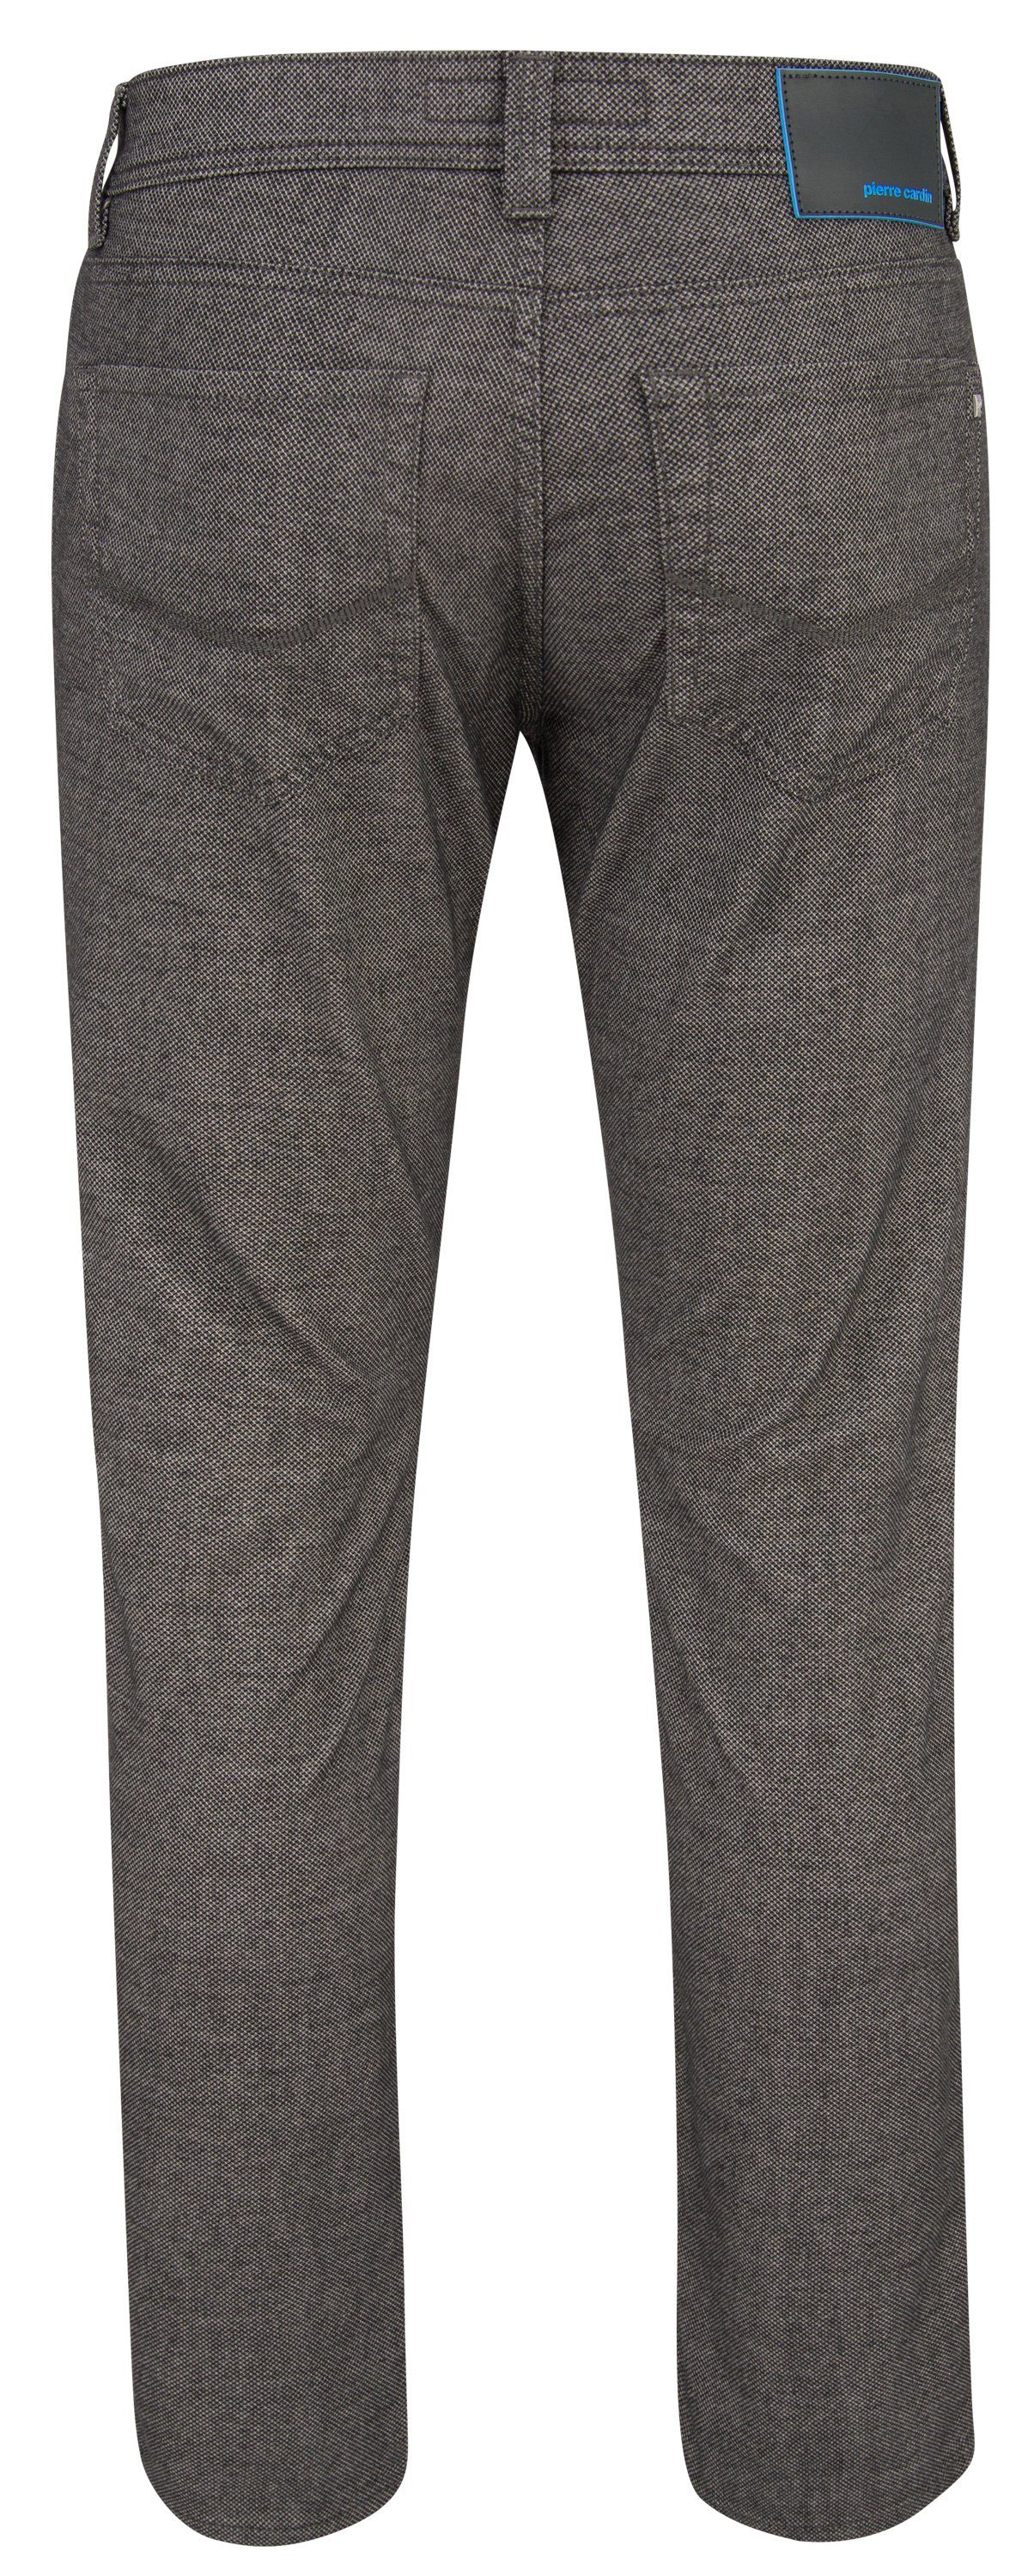 CARDIN grey 4790.82 5-Pocket-Jeans LYON structured Cardin FUTUREFLEX PIERRE 3451 Pierre